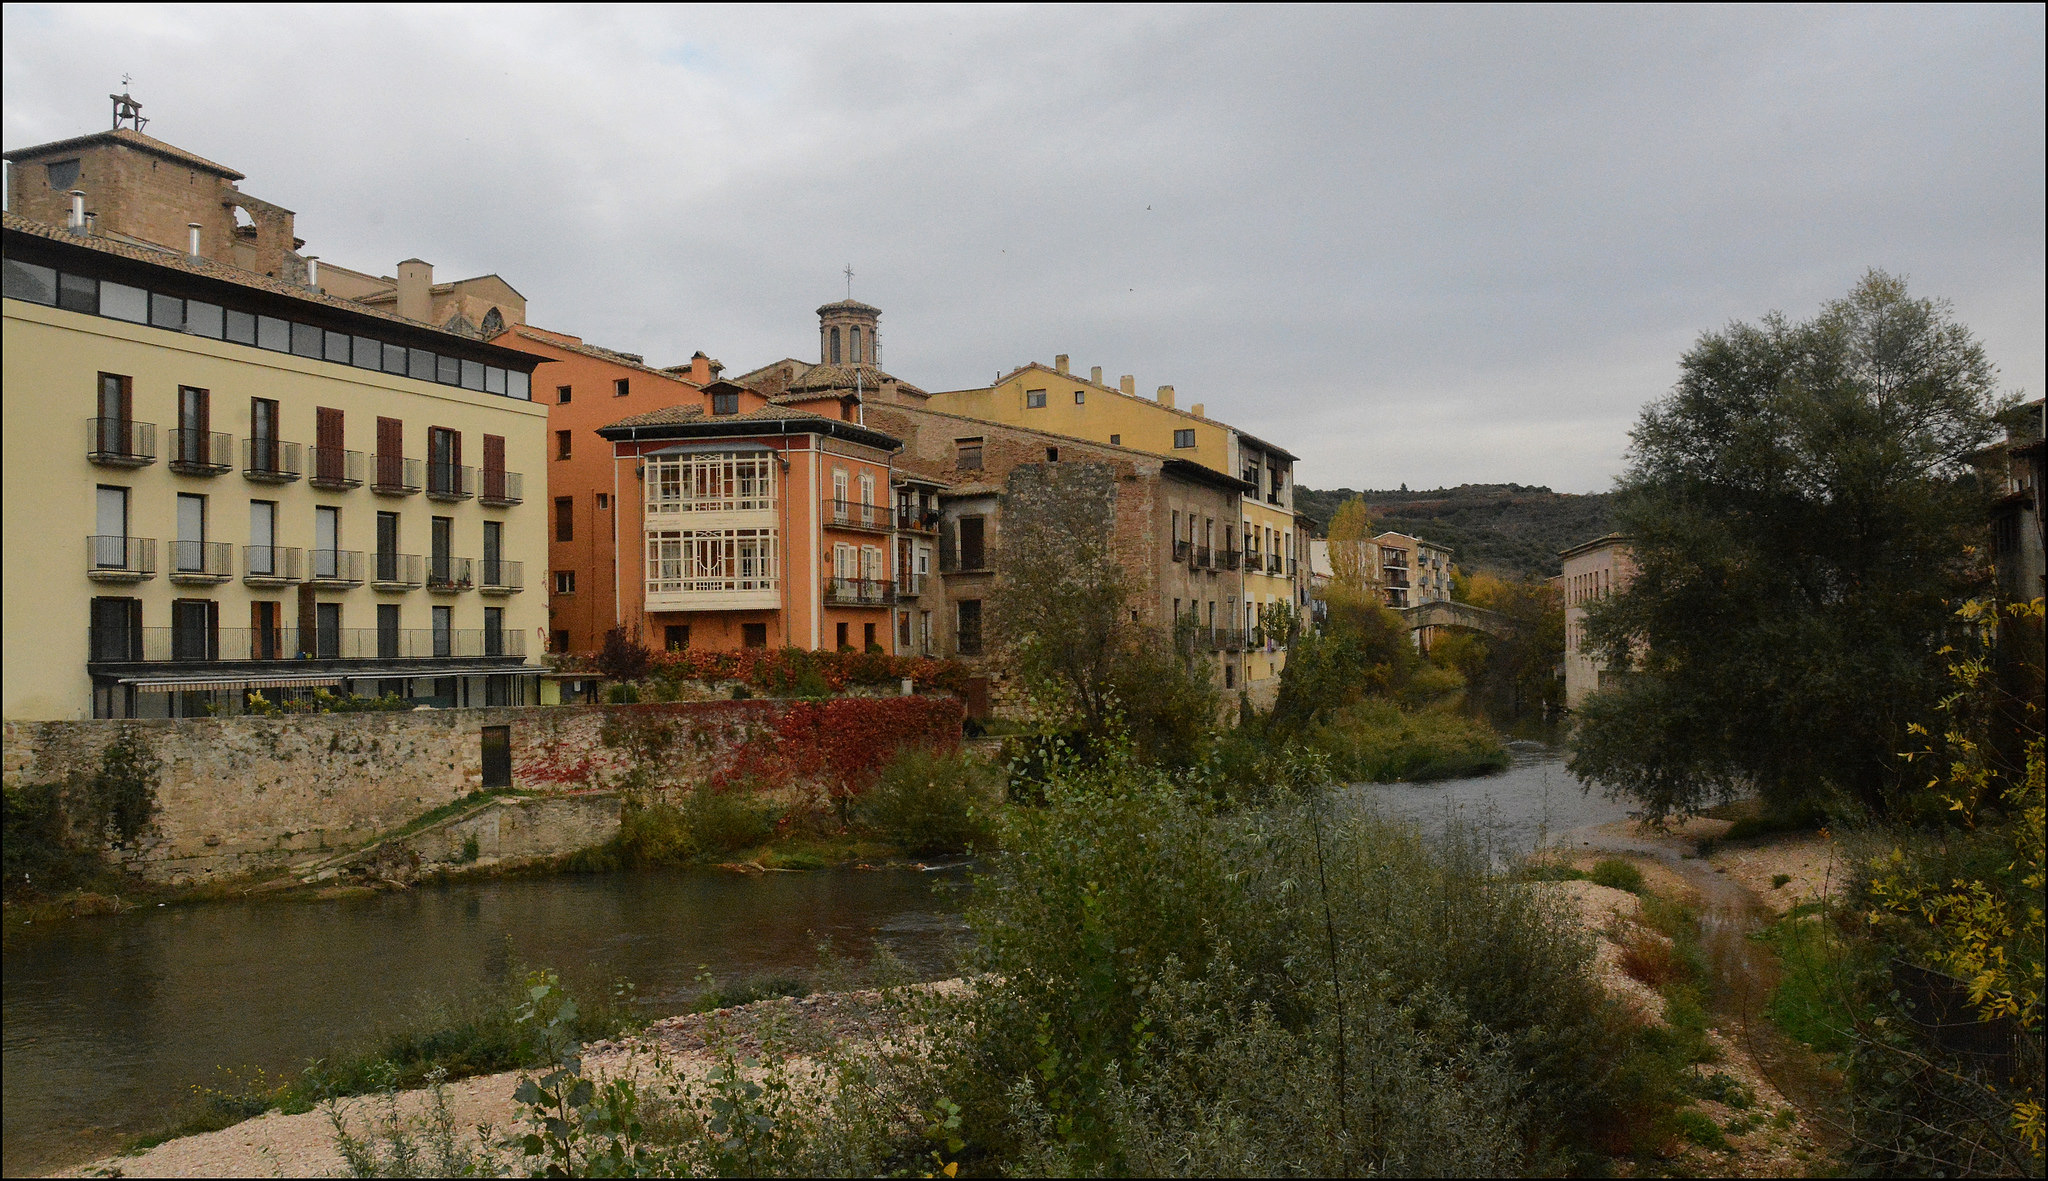 Casas en la ribera del río Ega (fotografía cedida en Flickr por Miguel Ángel García bajo las siguientes condiciones)